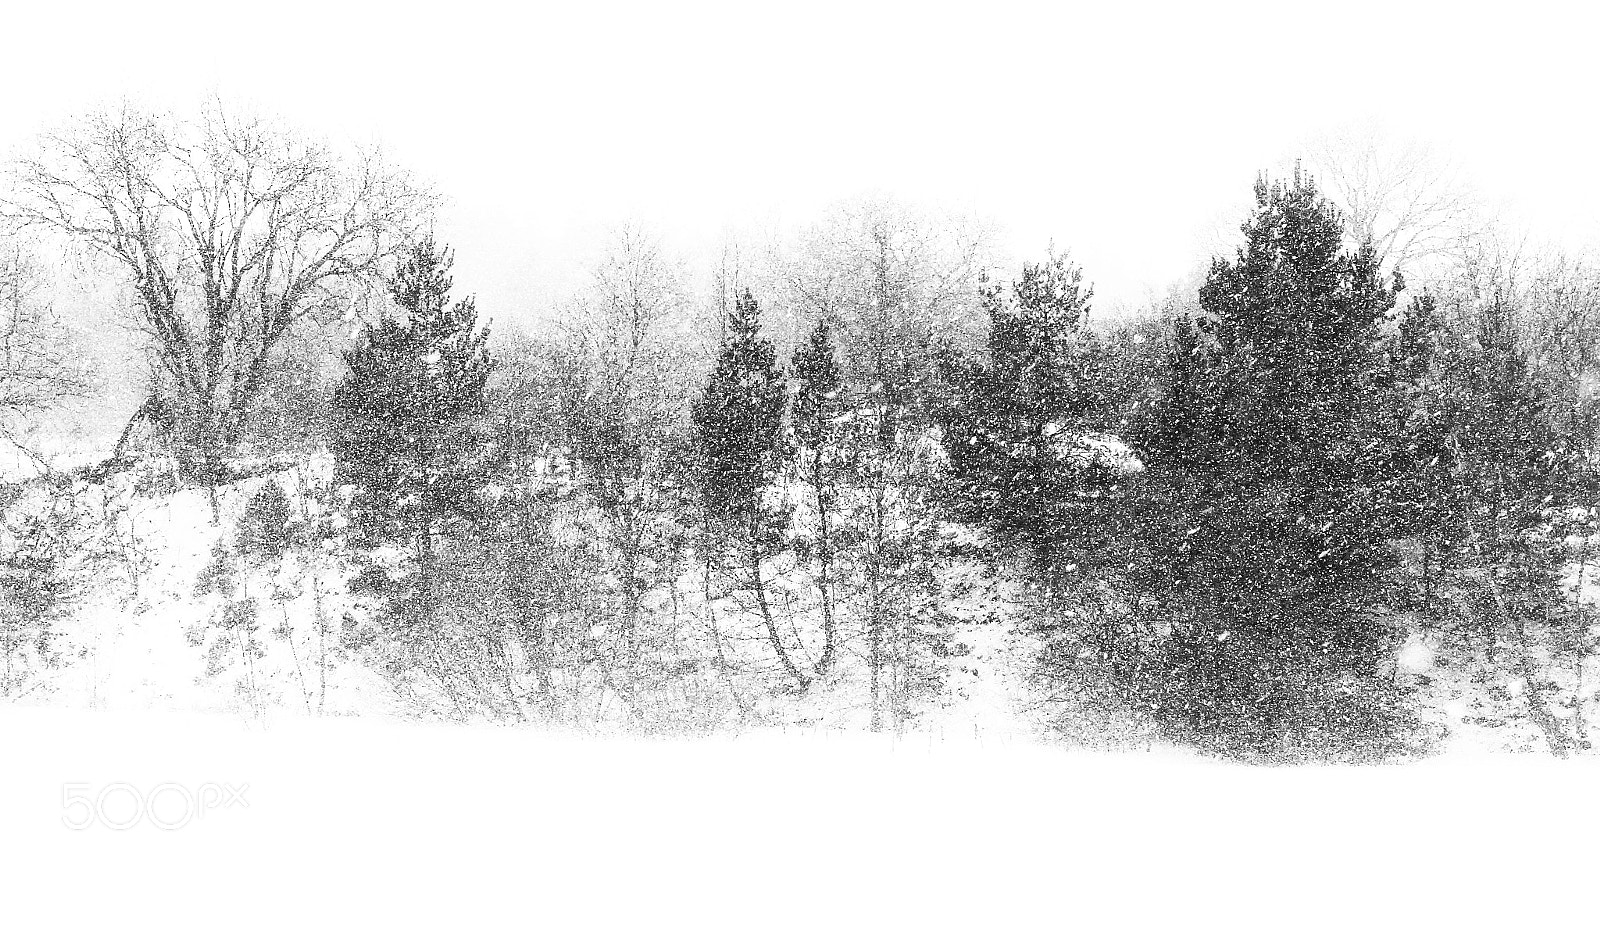 Canon EOS 7D sample photo. Winter photography